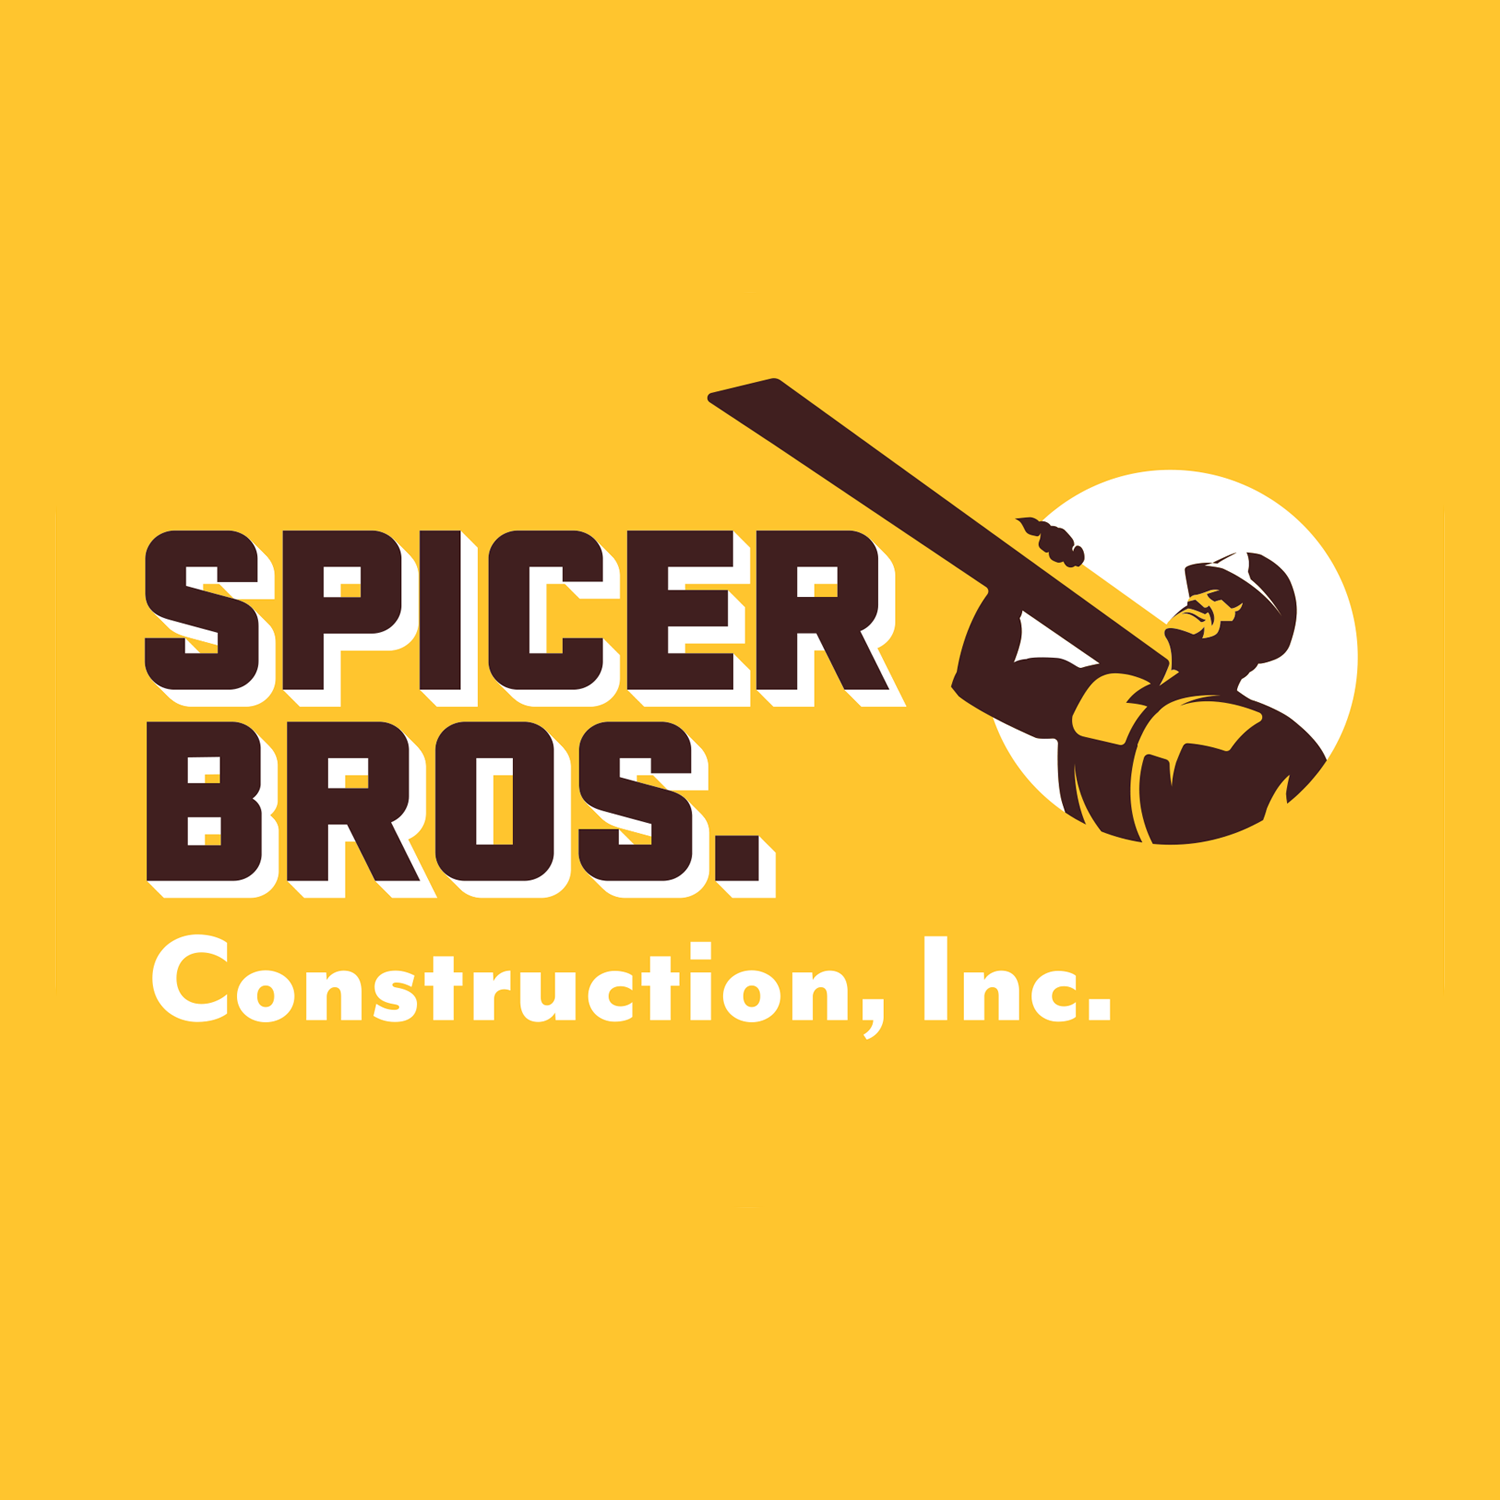 Spicer Bros. Construction, Inc